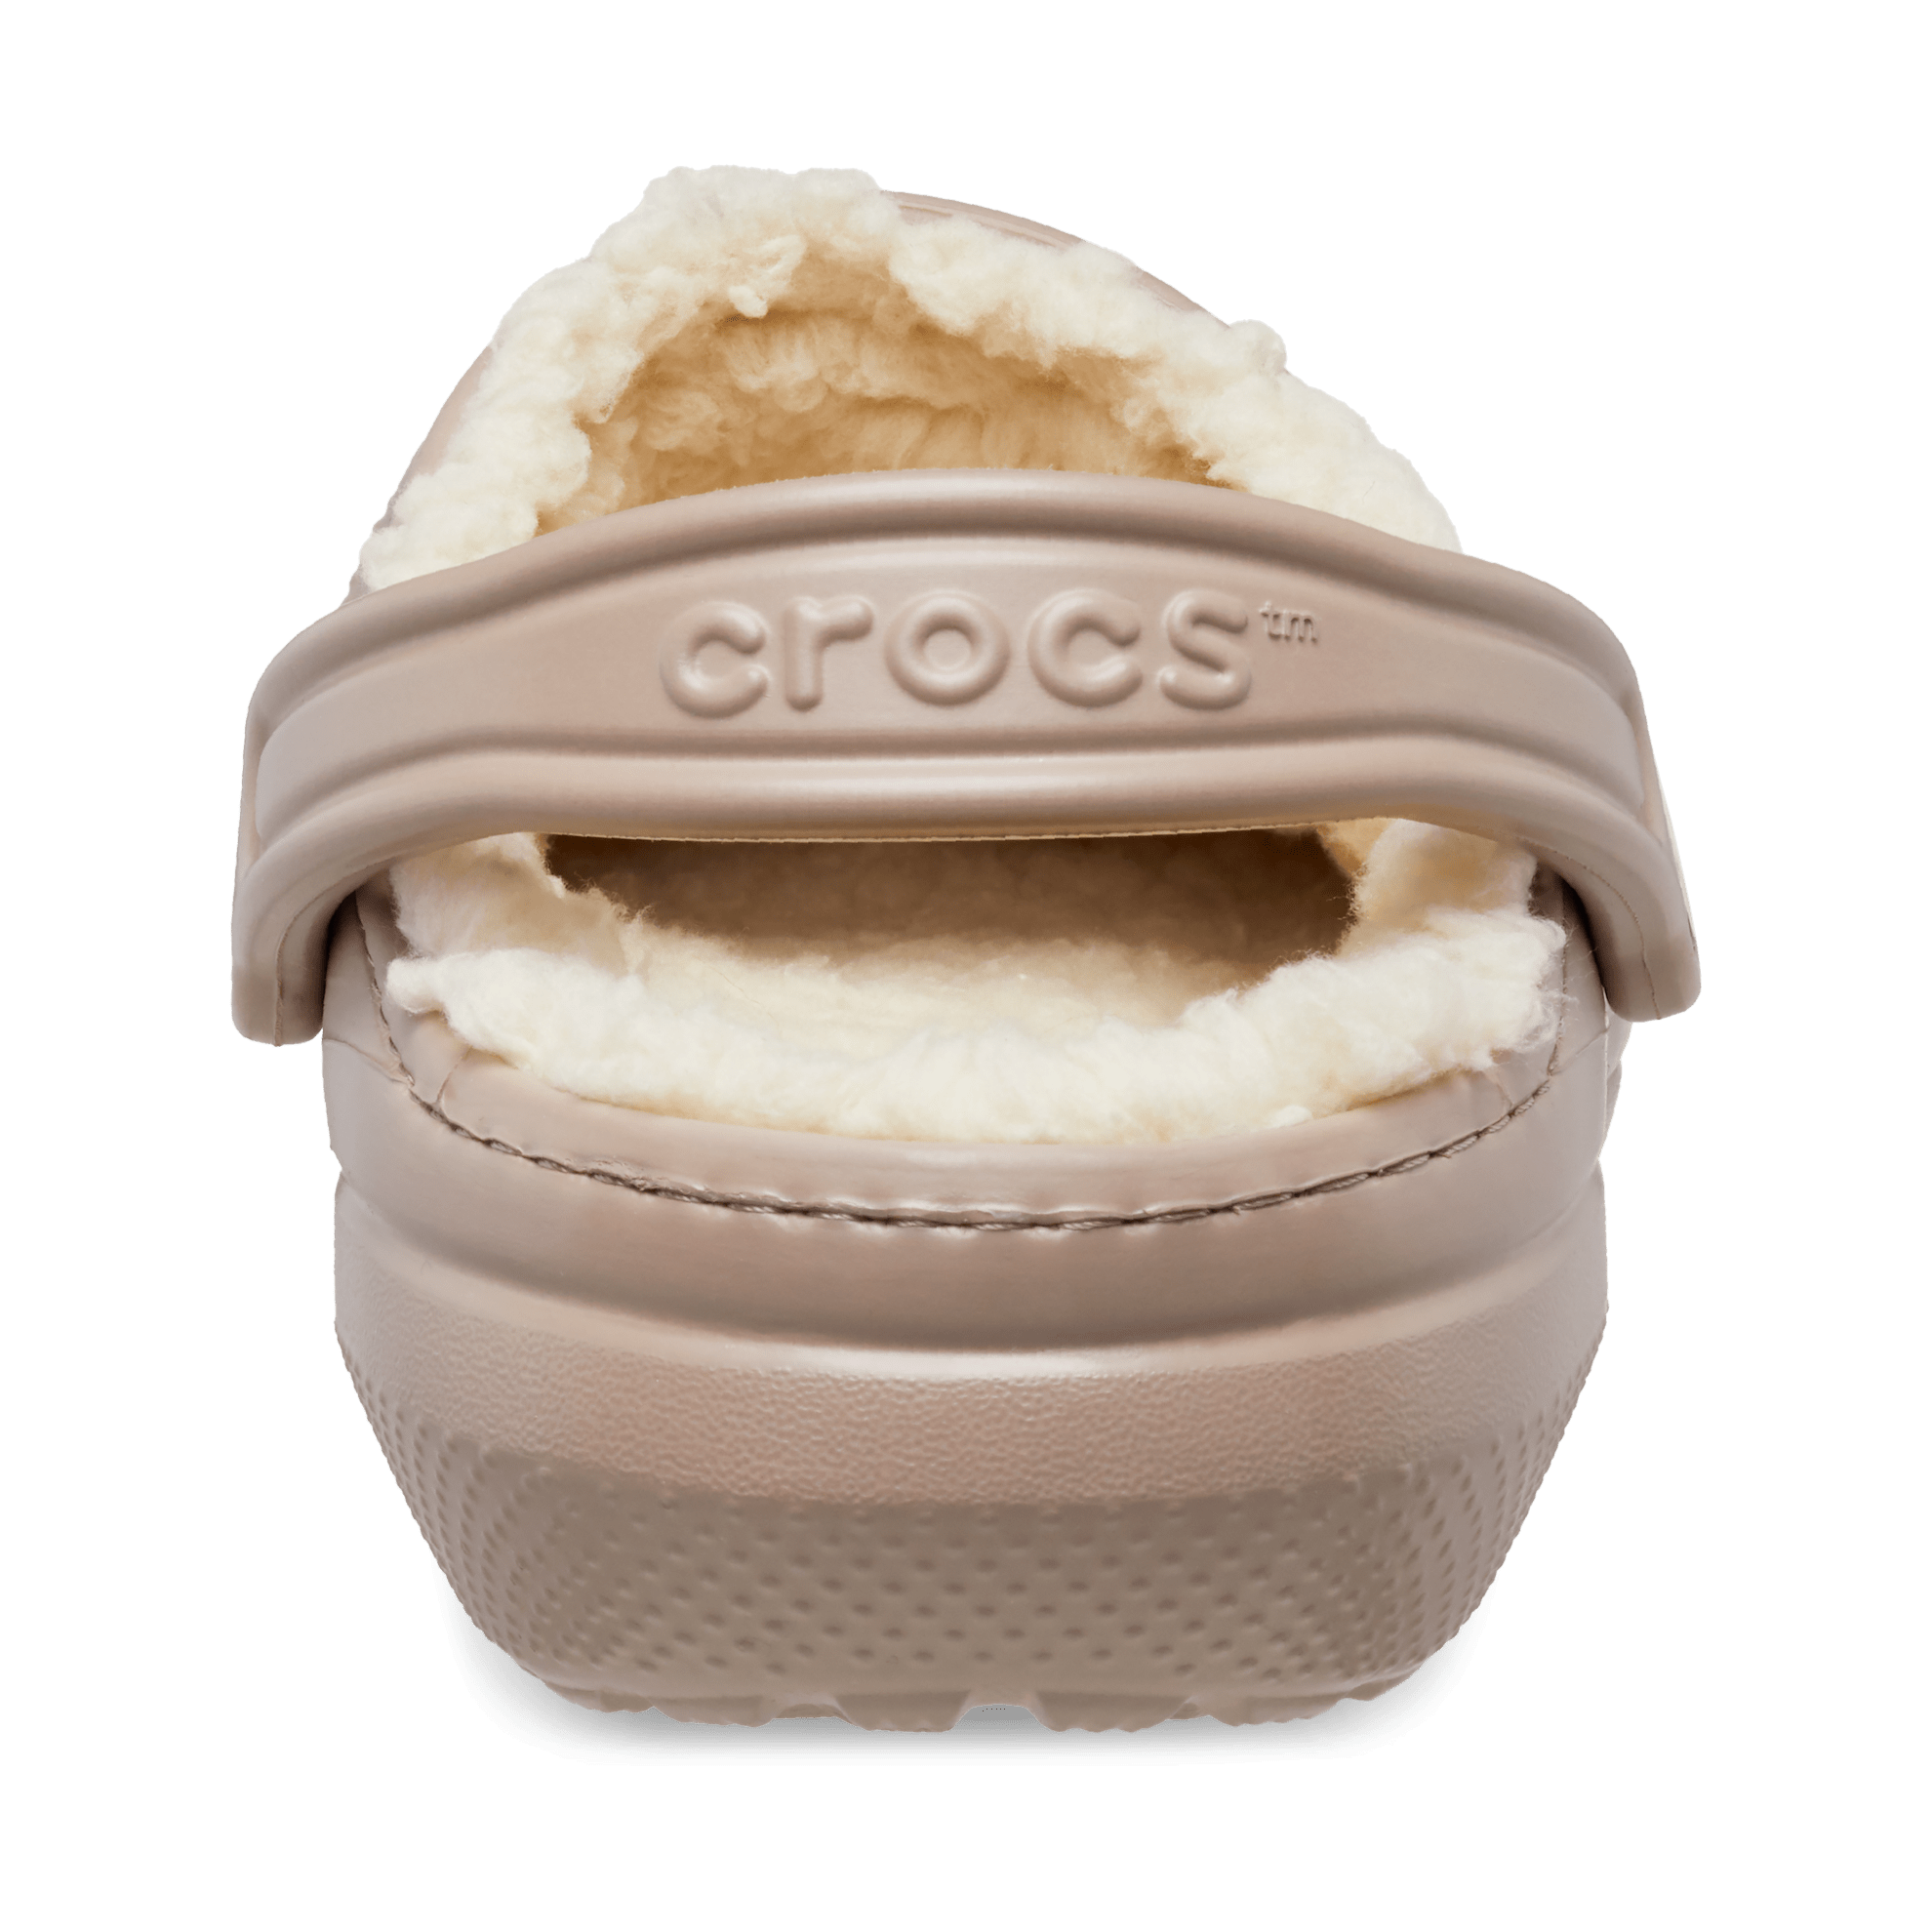 Crocs Classic Lined Clog Mushroom/Bone